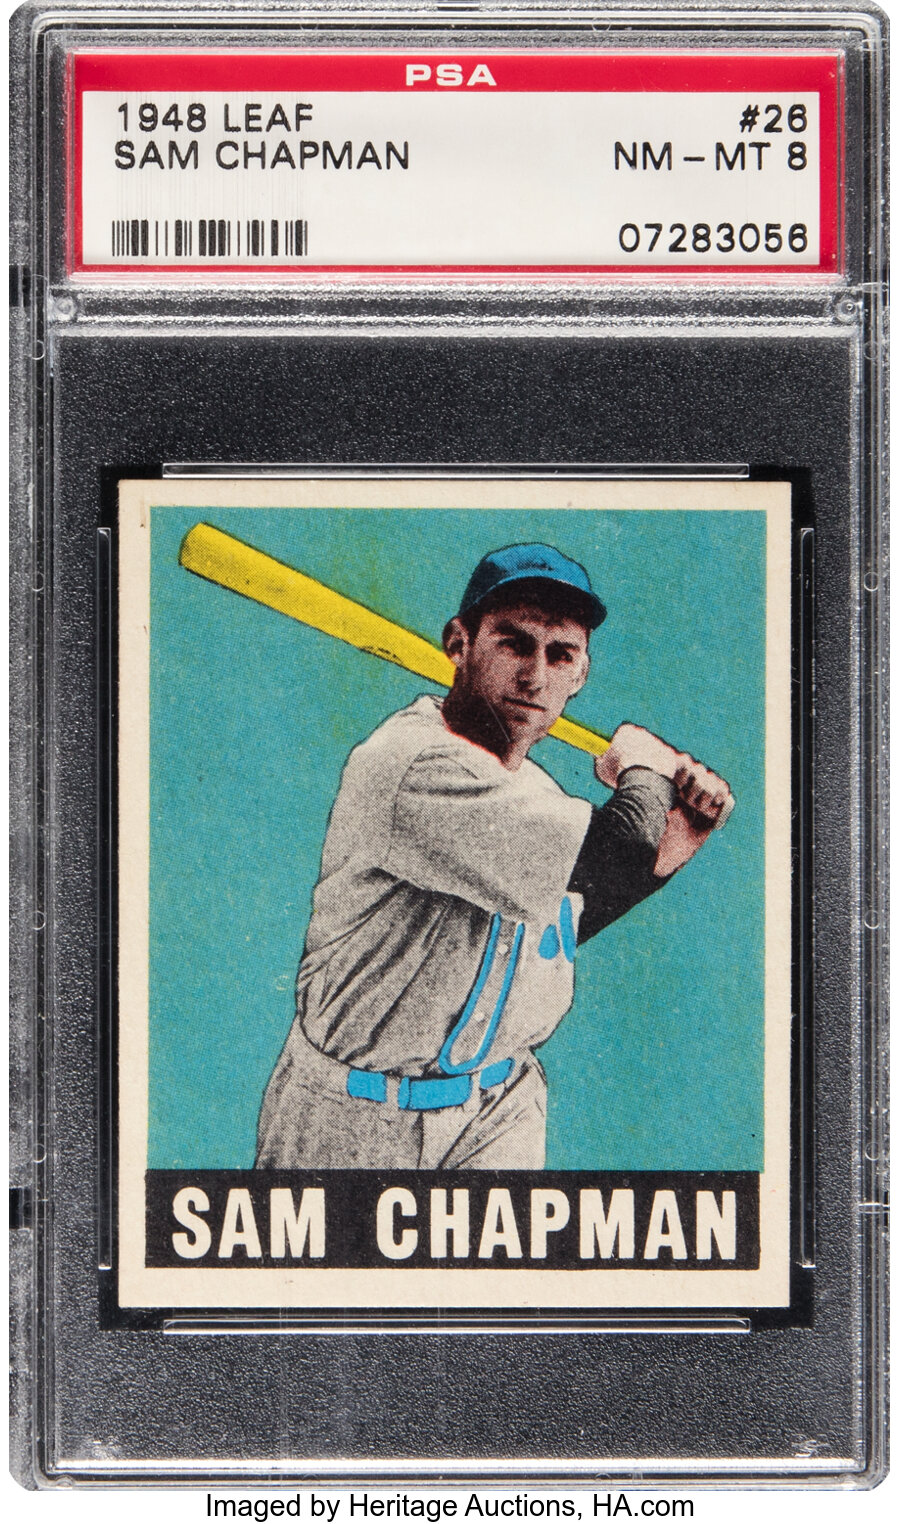 1948 Leaf Sam Chapman #26 PSA NM/MT 8